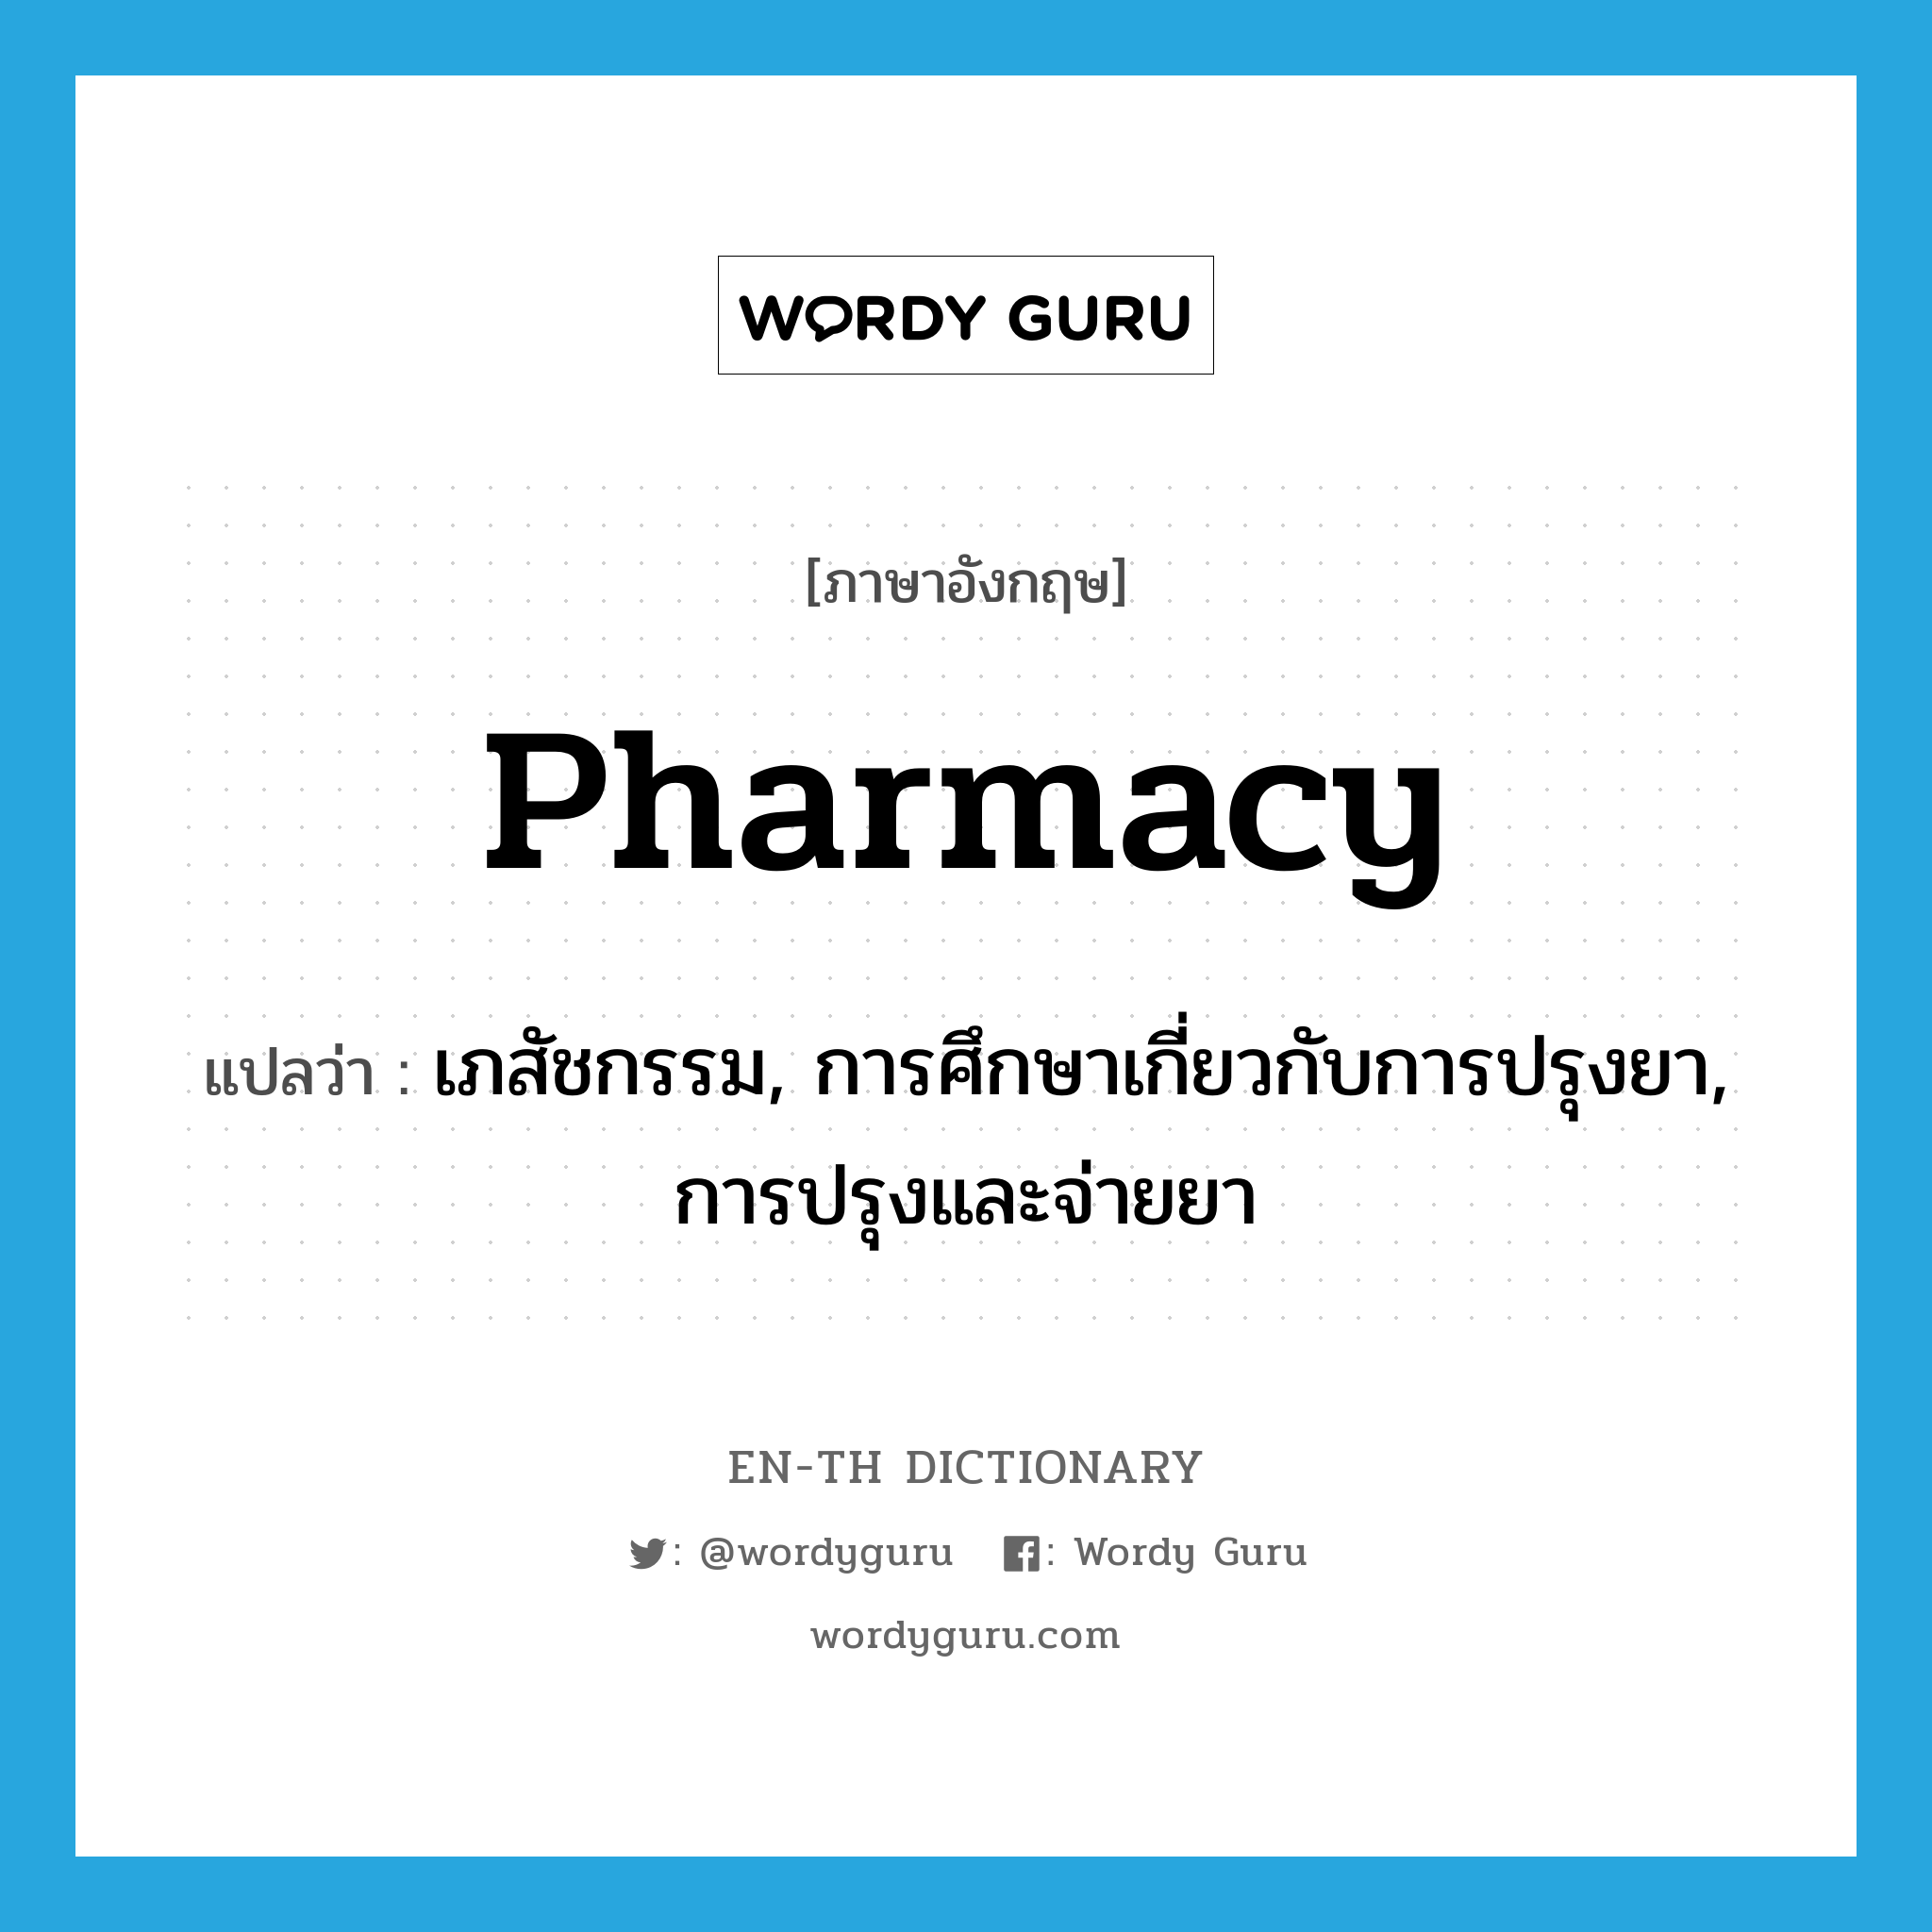 pharmacy แปลว่า?, คำศัพท์ภาษาอังกฤษ pharmacy แปลว่า เภสัชกรรม, การศึกษาเกี่ยวกับการปรุงยา, การปรุงและจ่ายยา ประเภท N หมวด N